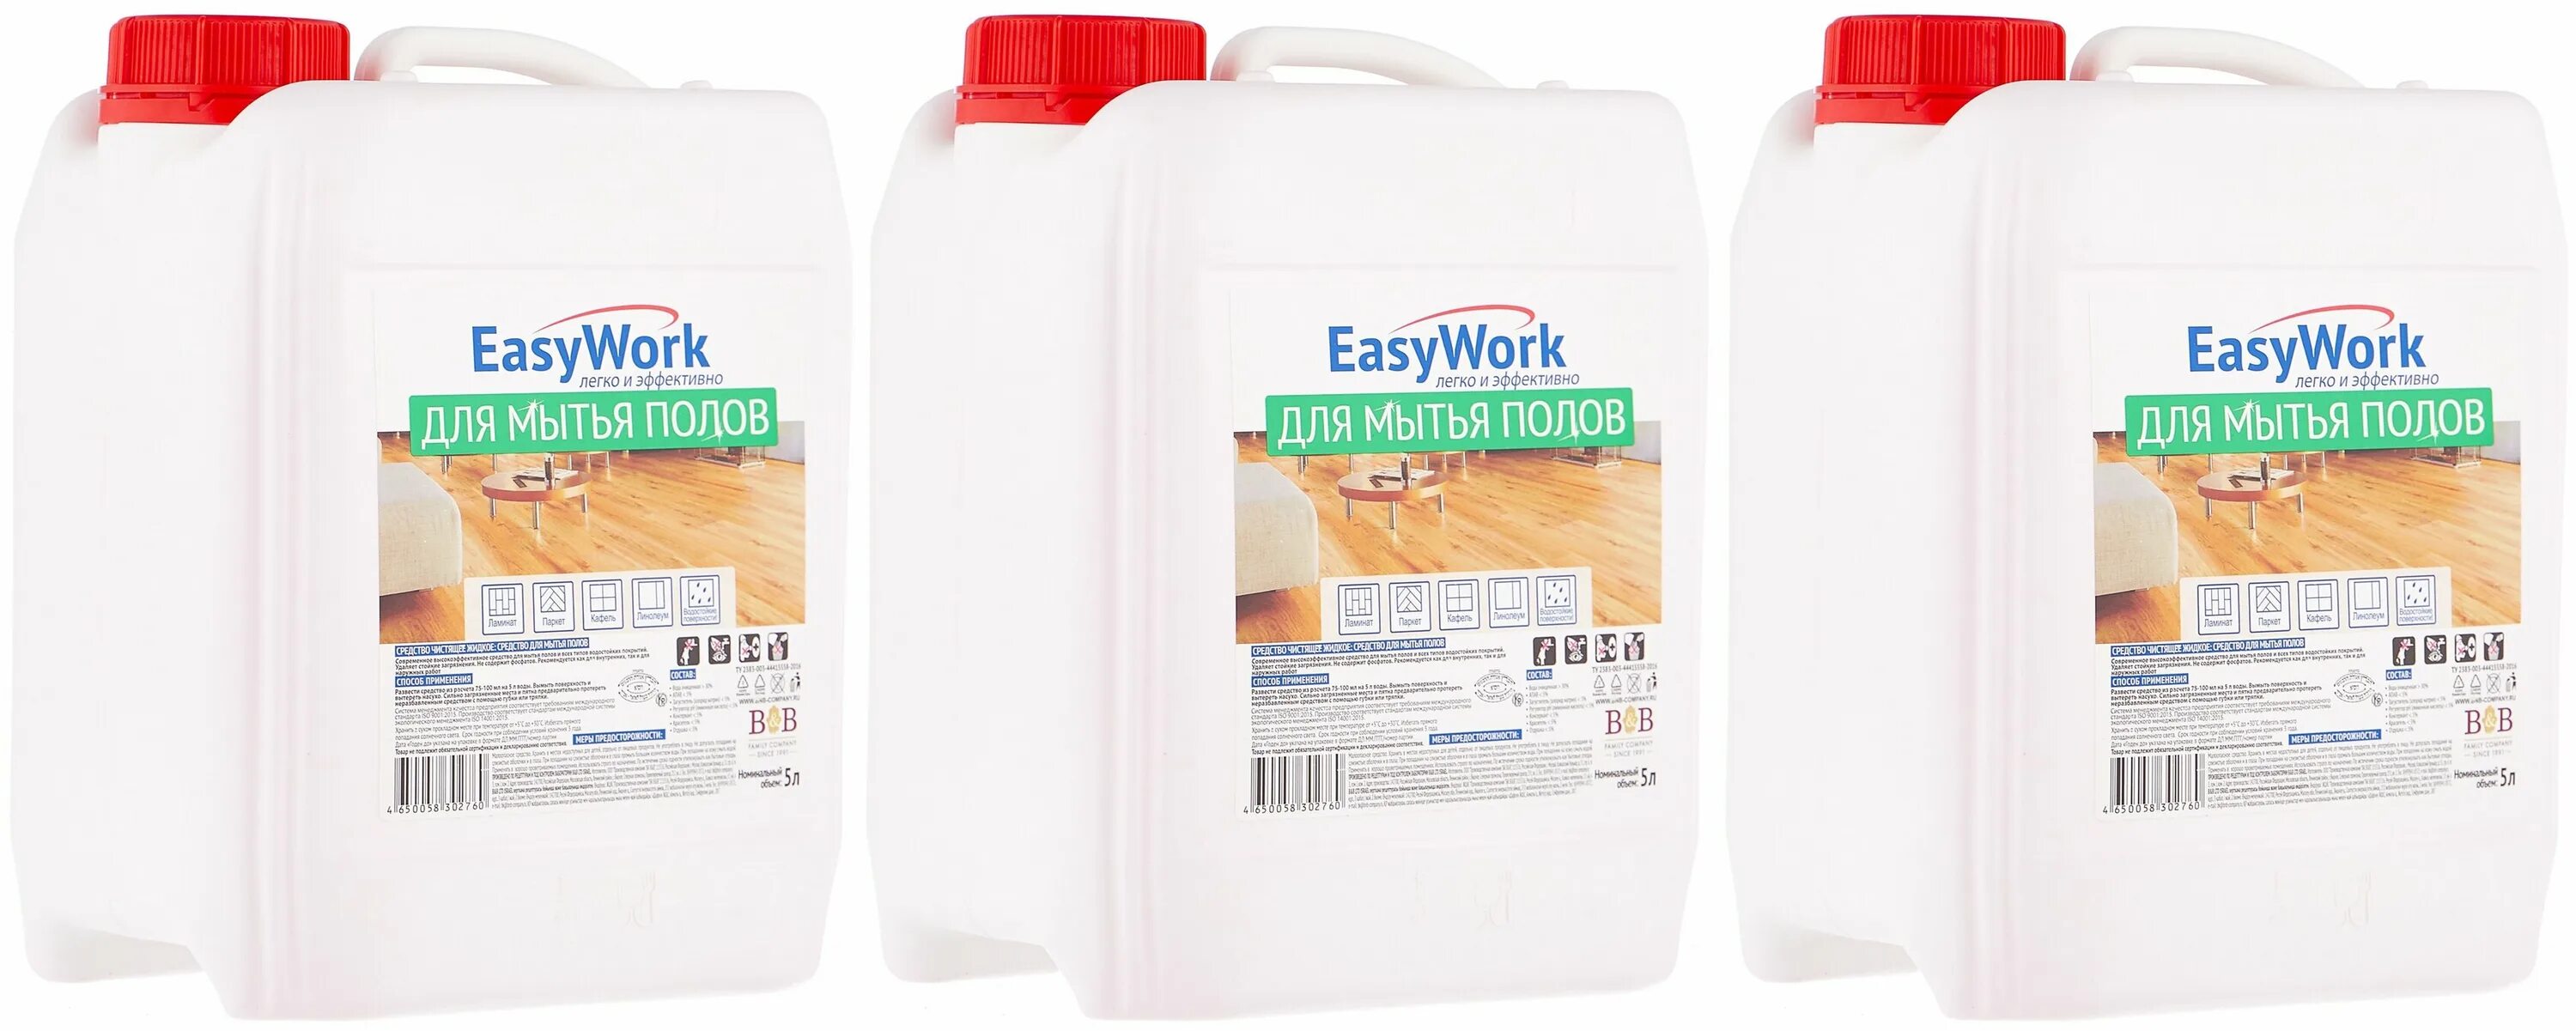 Средство для мытья полов EASYWORK 5 Л. EASYWORK средство для мытья пола 750 мл,. EASYWORK средство для мытья полов 5л 1/4. Сертификаты на средство для мытья полов EASYWORK 5 Л. Приложение easywork отзывы